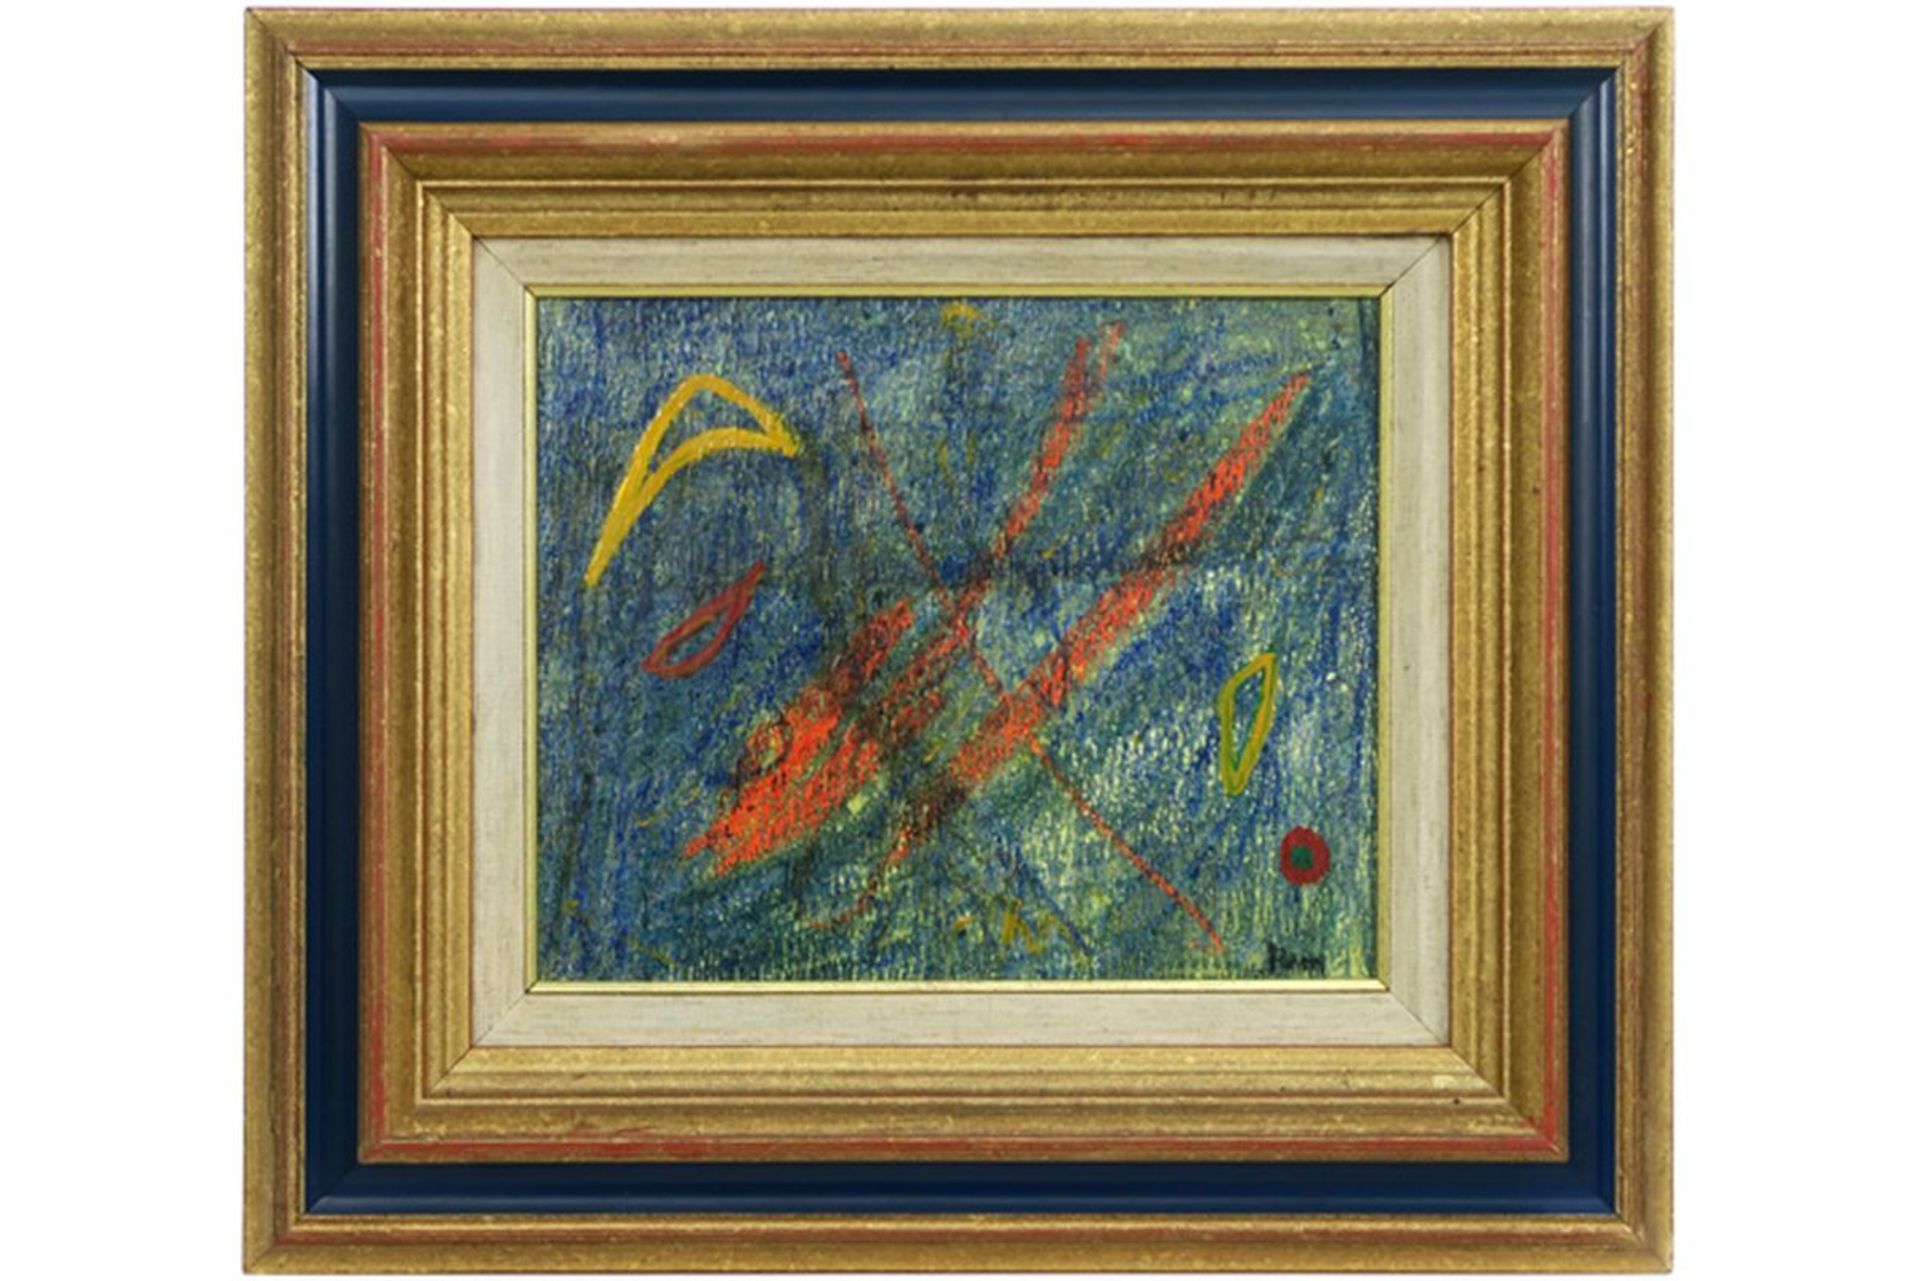 REM (1904 - 1974) olieverfschilderij op paneel : "Compositie" - 26 x 31 getekend - [...]